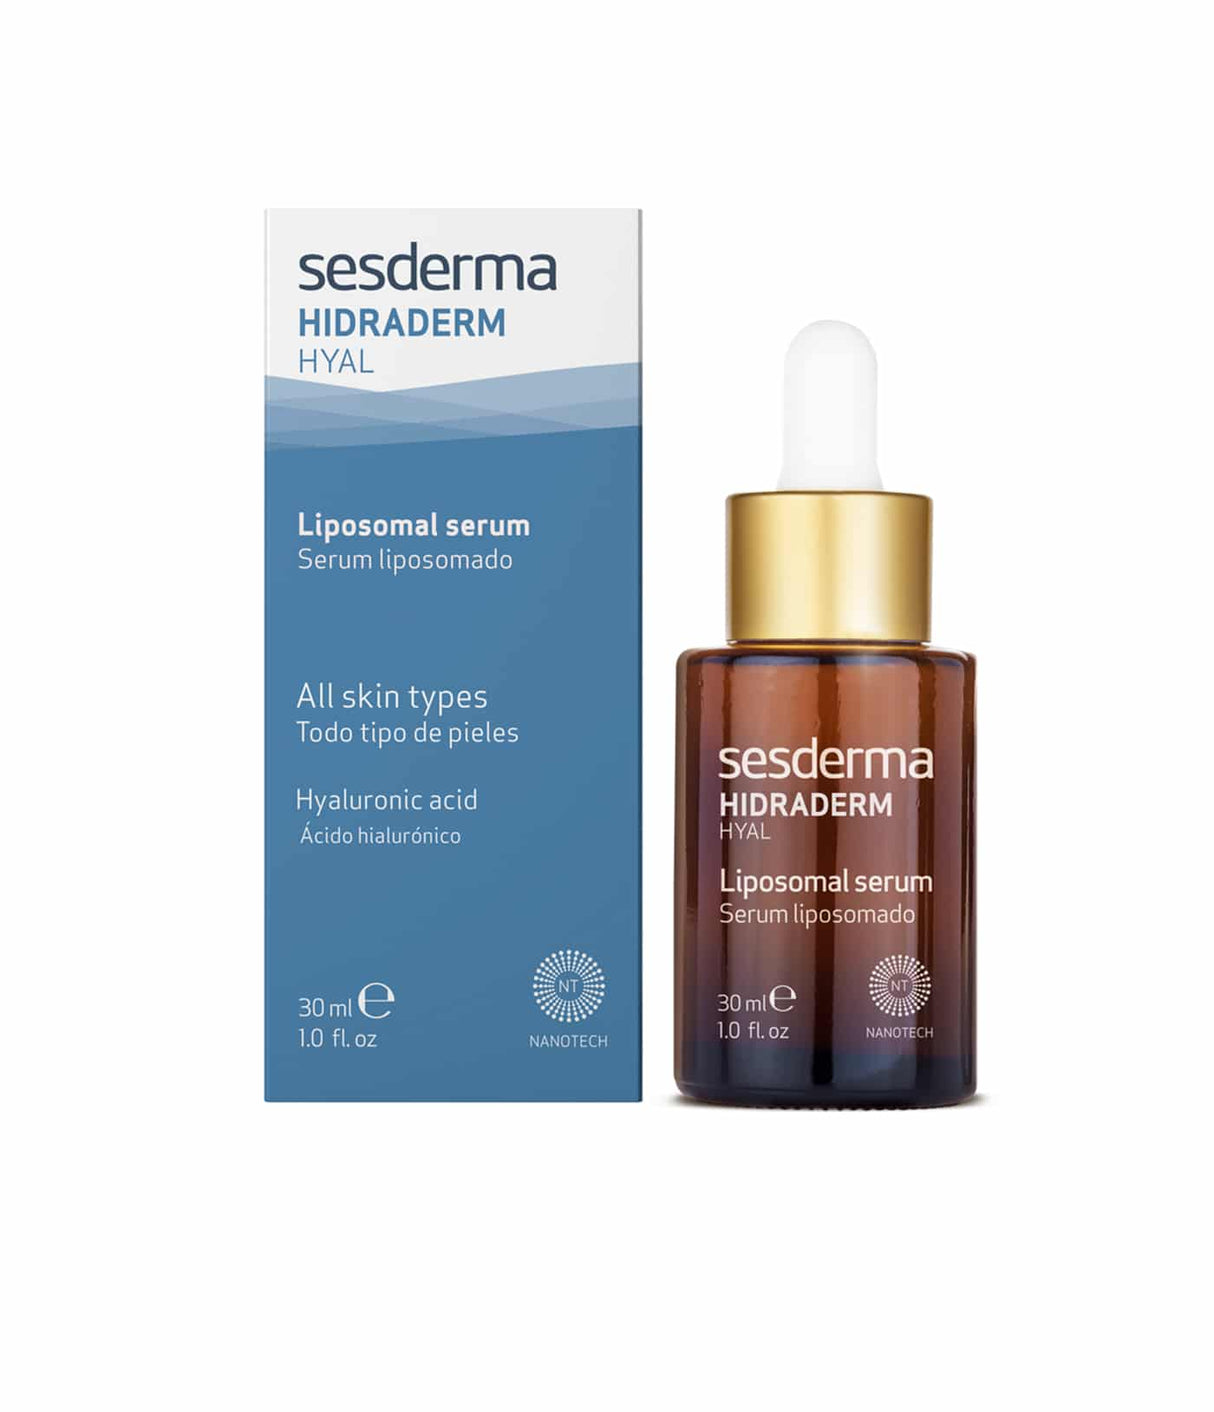 Hidraderm Hyal Liposomal Serum de Sesderma